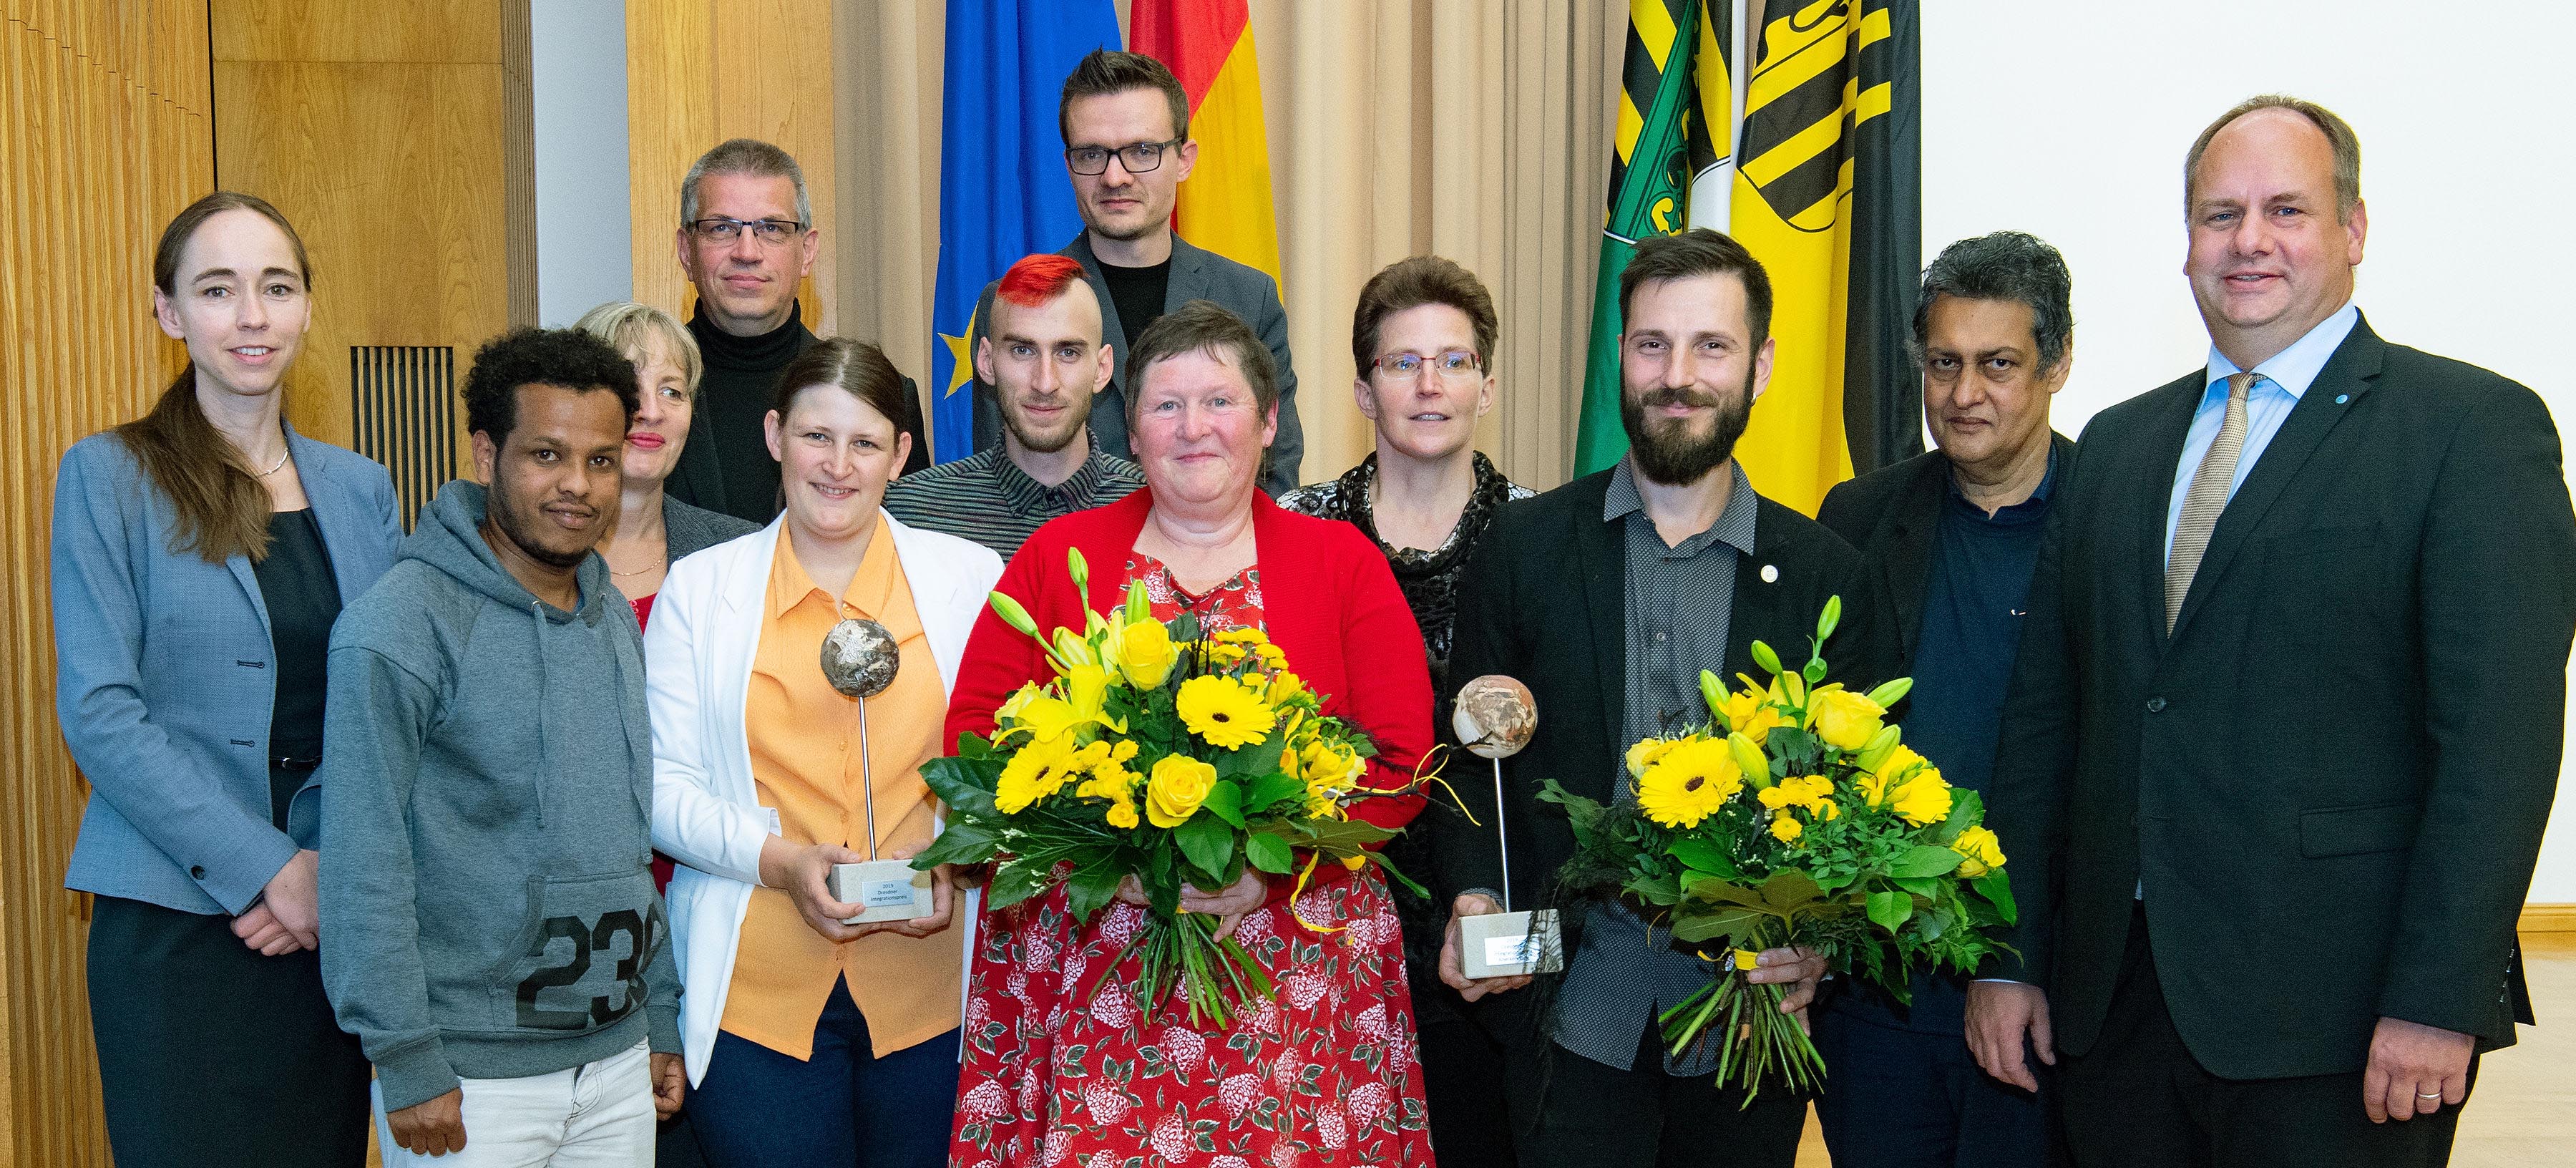 Die Preisträger 2019 des Integrationspreises mit Oberbürgermeister Dirk Hilbert und Sozialbürgermeisterin Dr. Kristin Klaudia Kaufmann